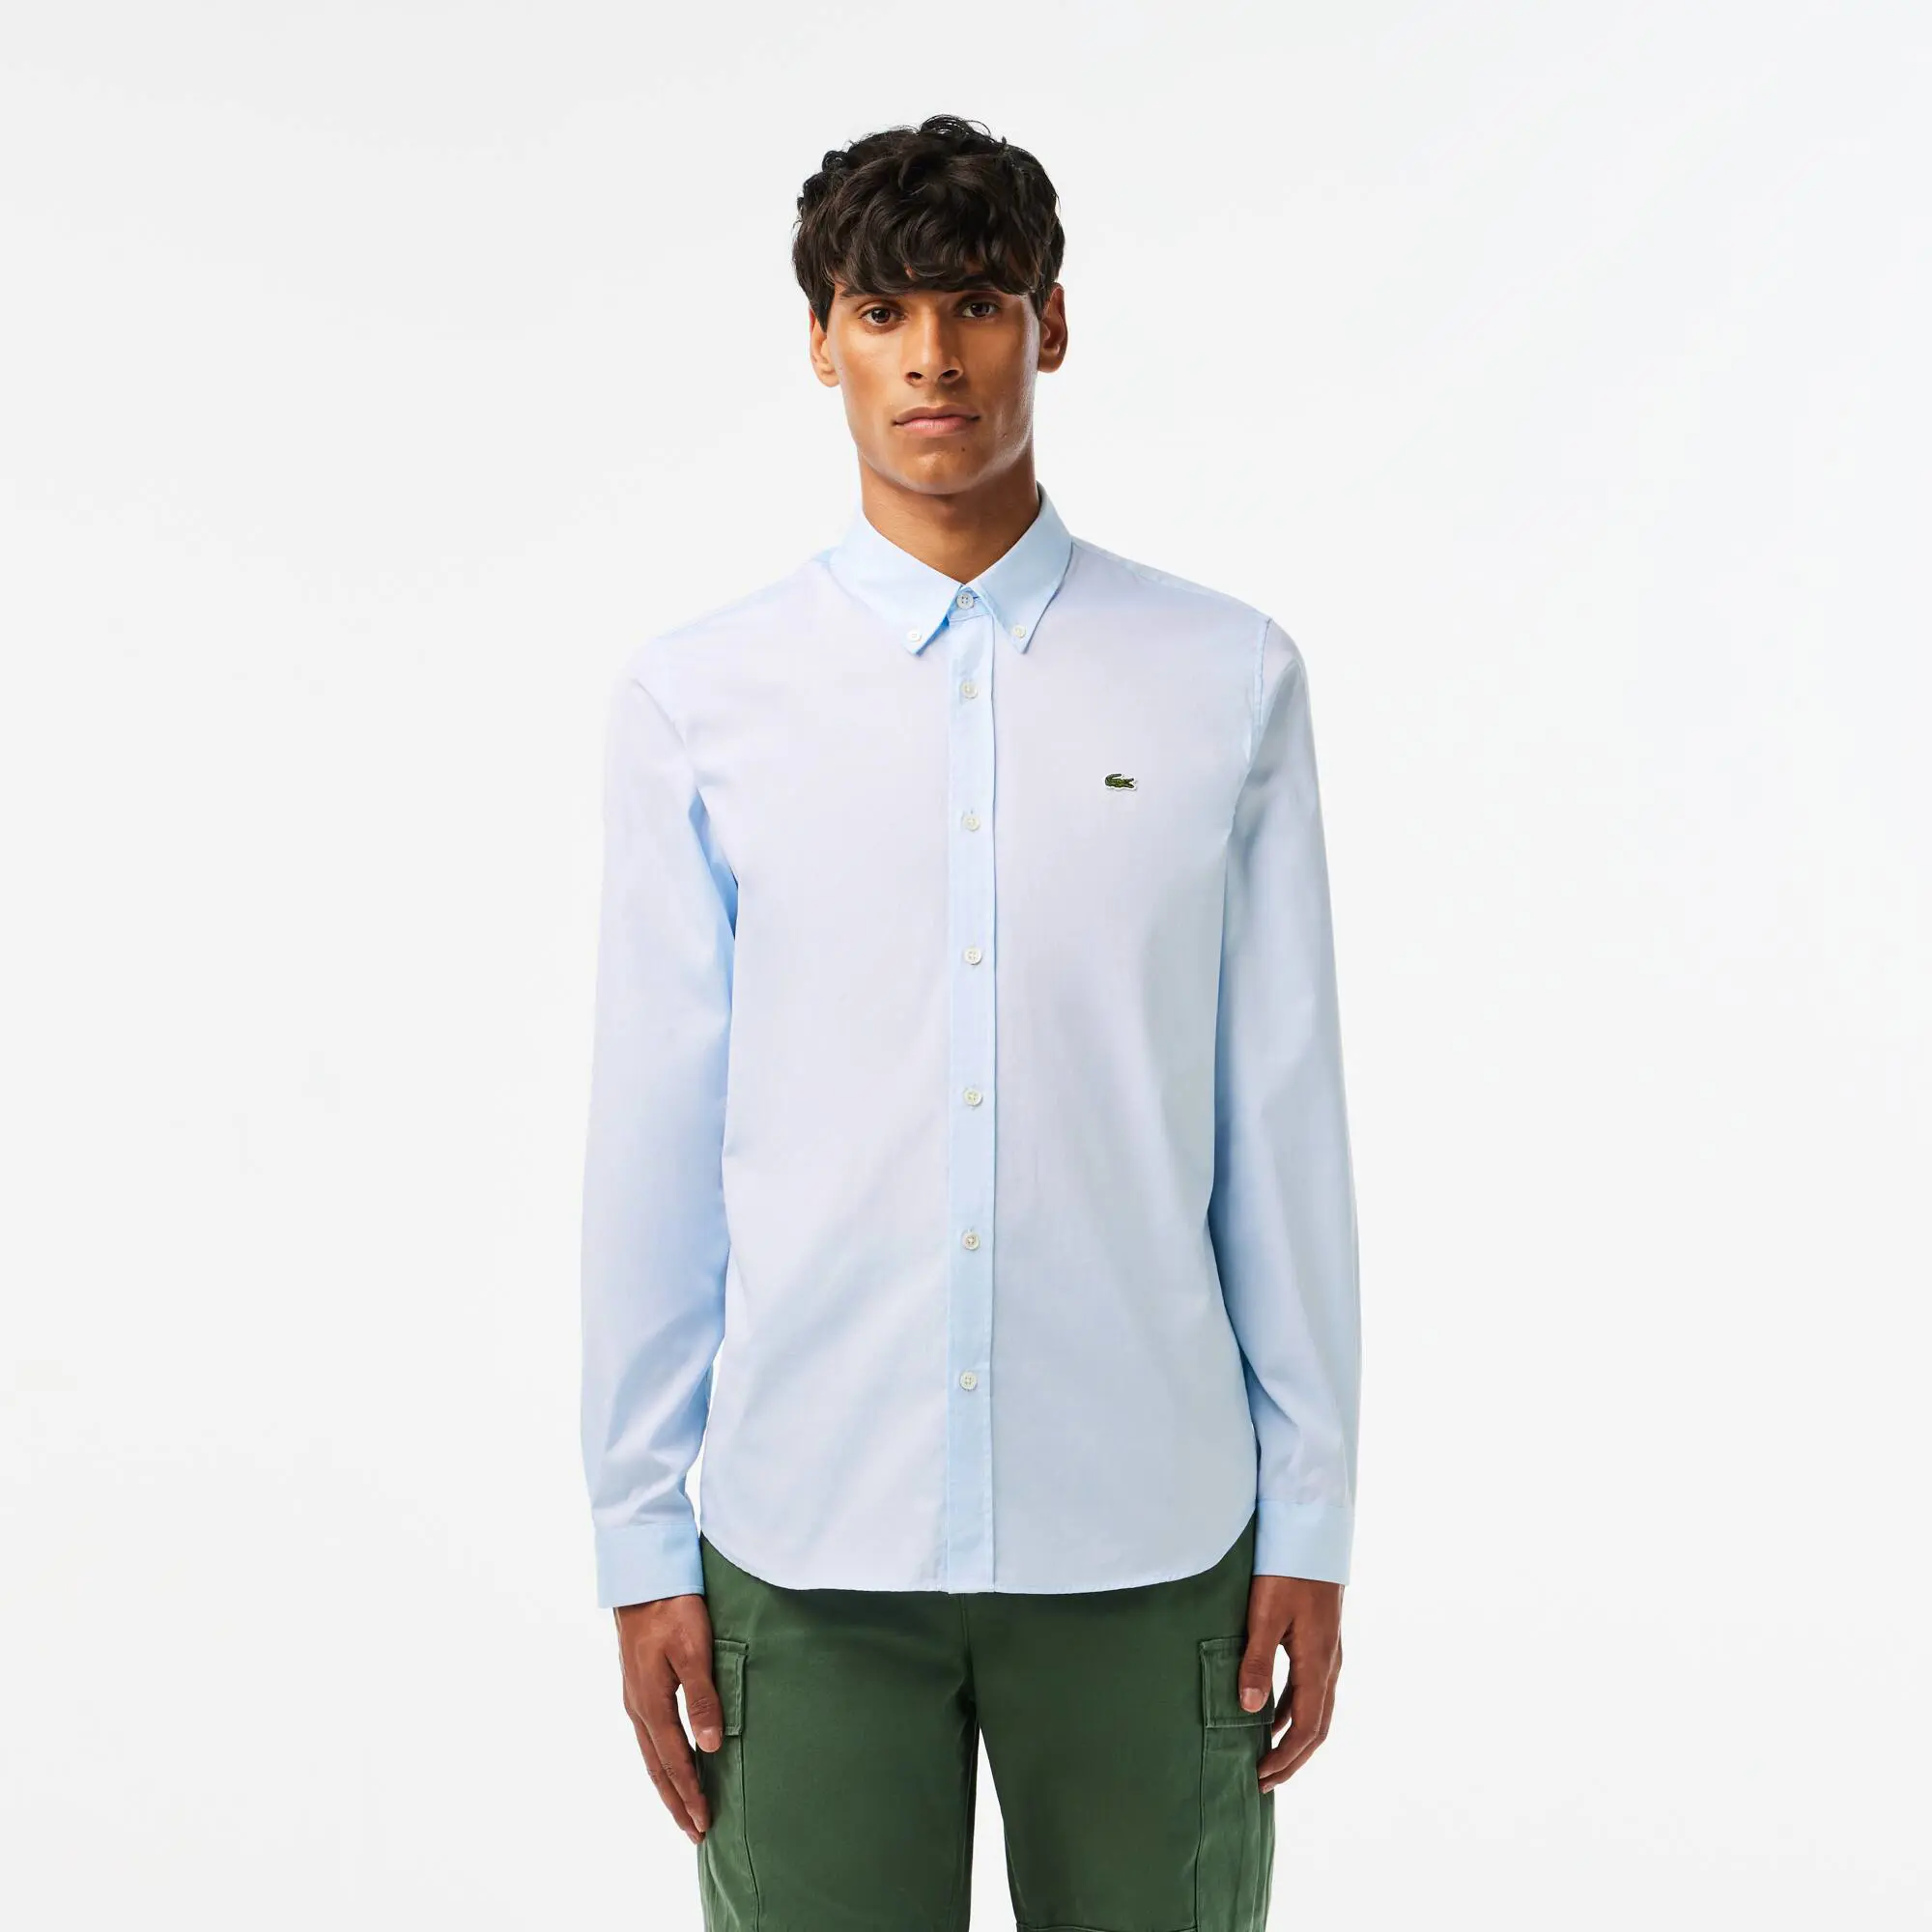 Lacoste Men’s Slim Fit Premium Cotton Shirt. 1